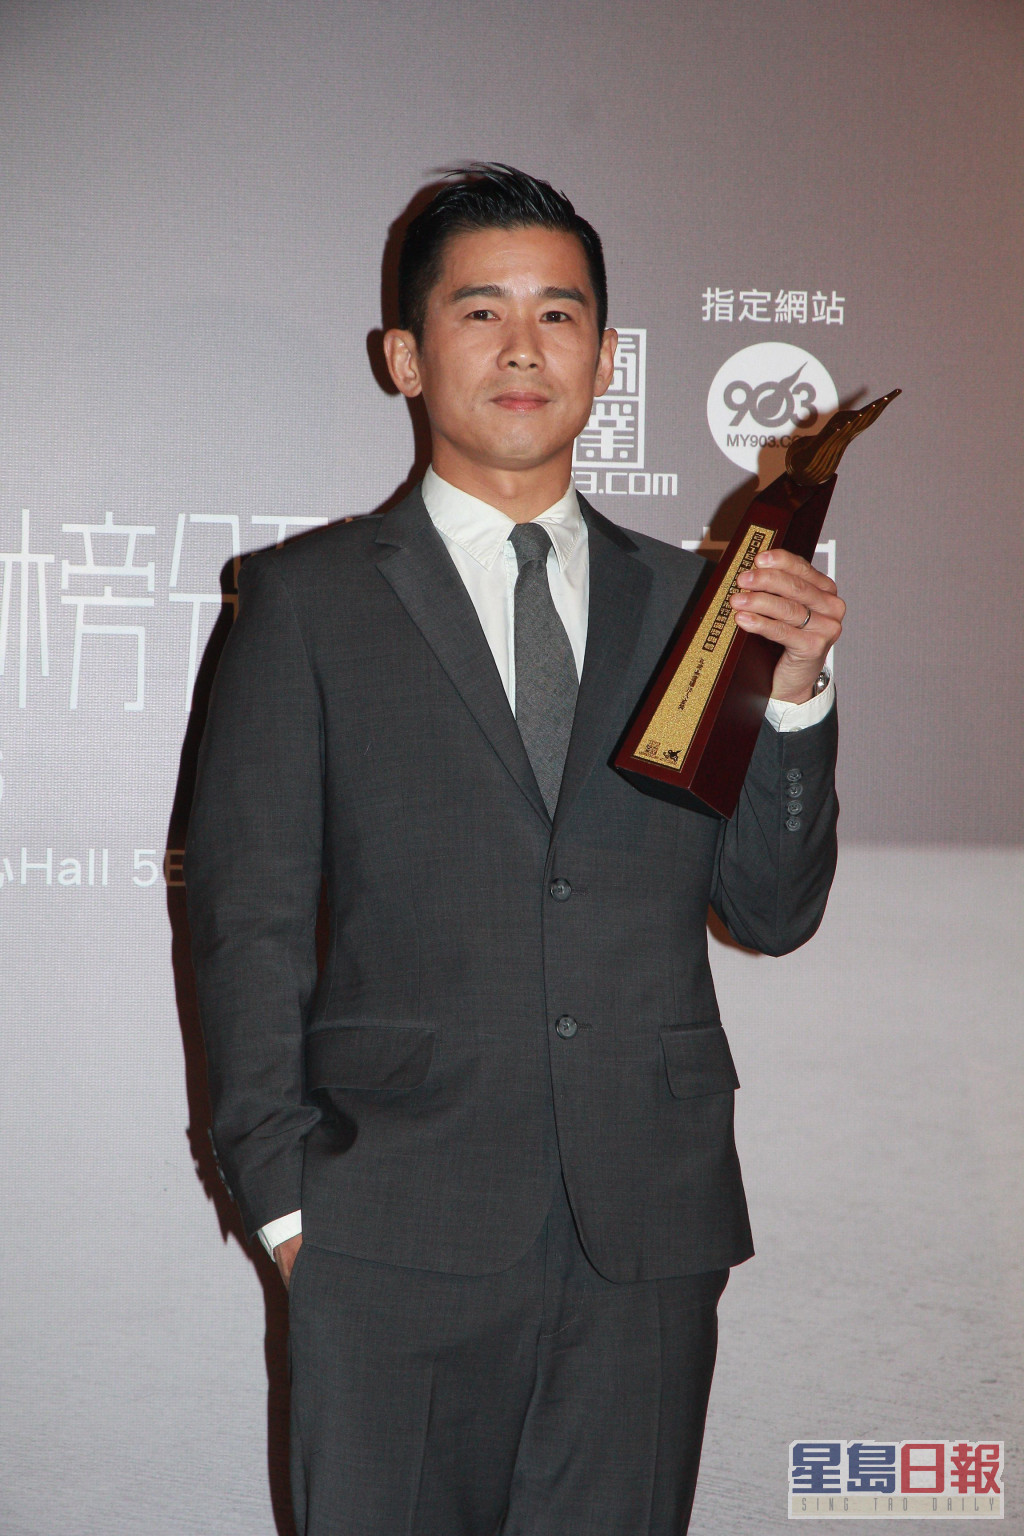 林海峰曾獲「叱咤樂壇唱作人金獎」。